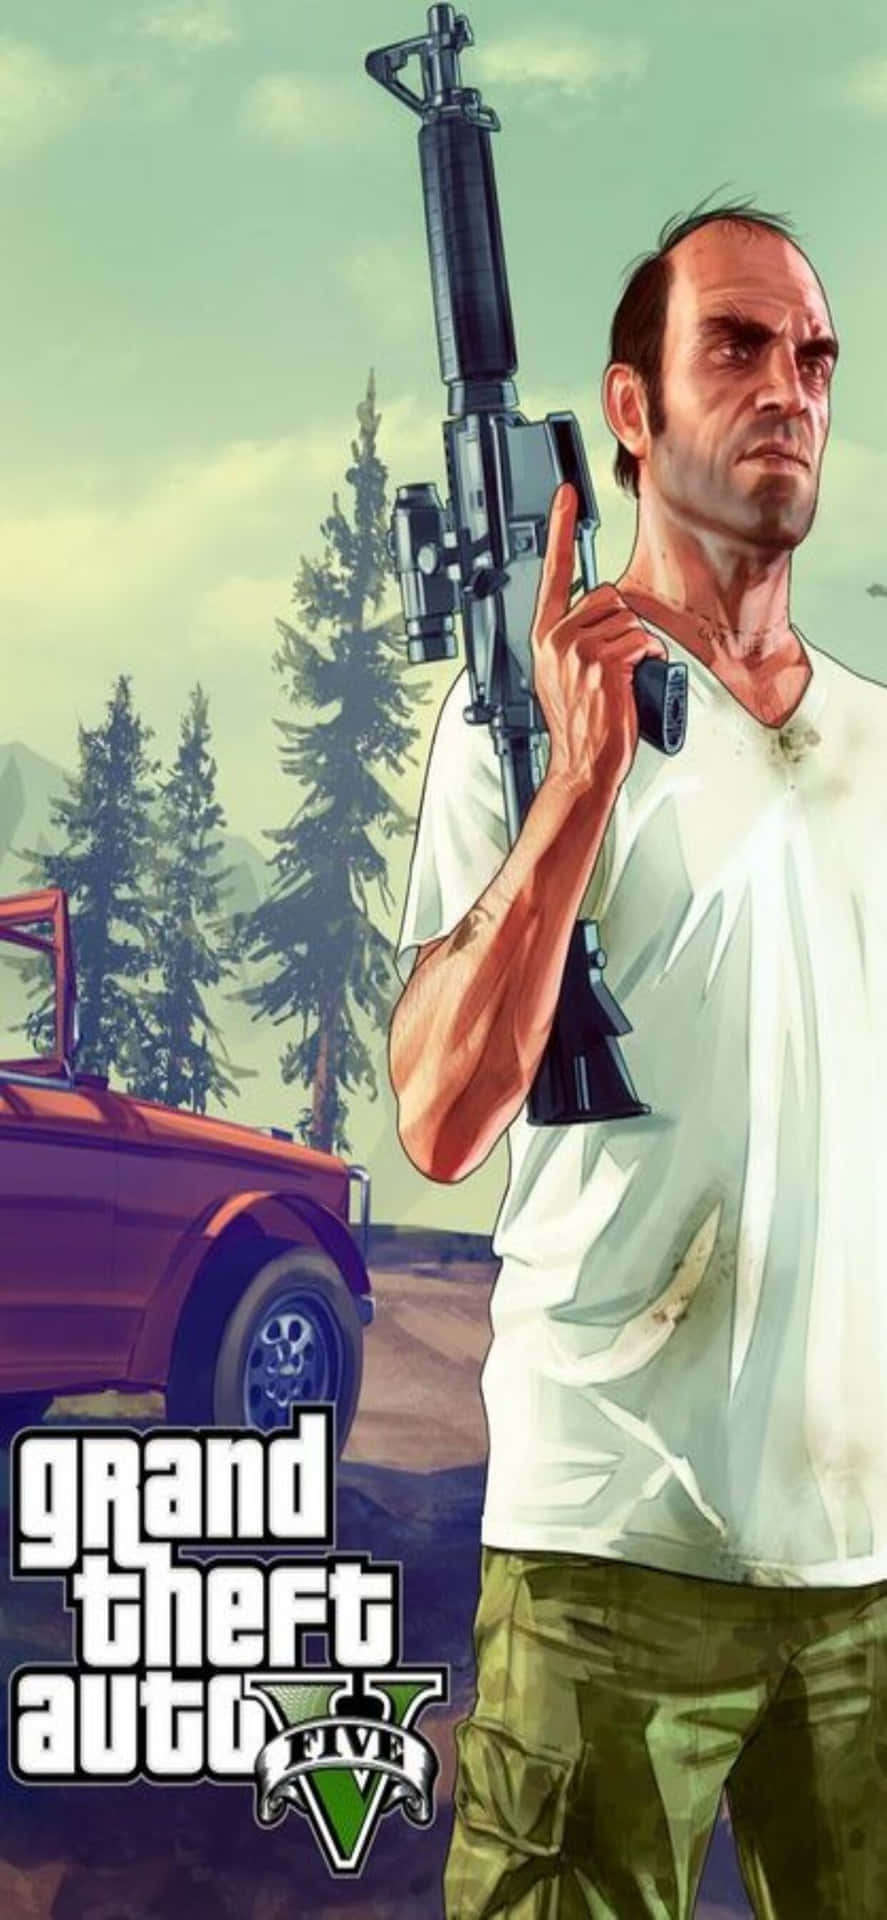 Fondode Pantalla De Grand Theft Auto V Para Iphone Xs Max De Trevor Con Un Rifle.